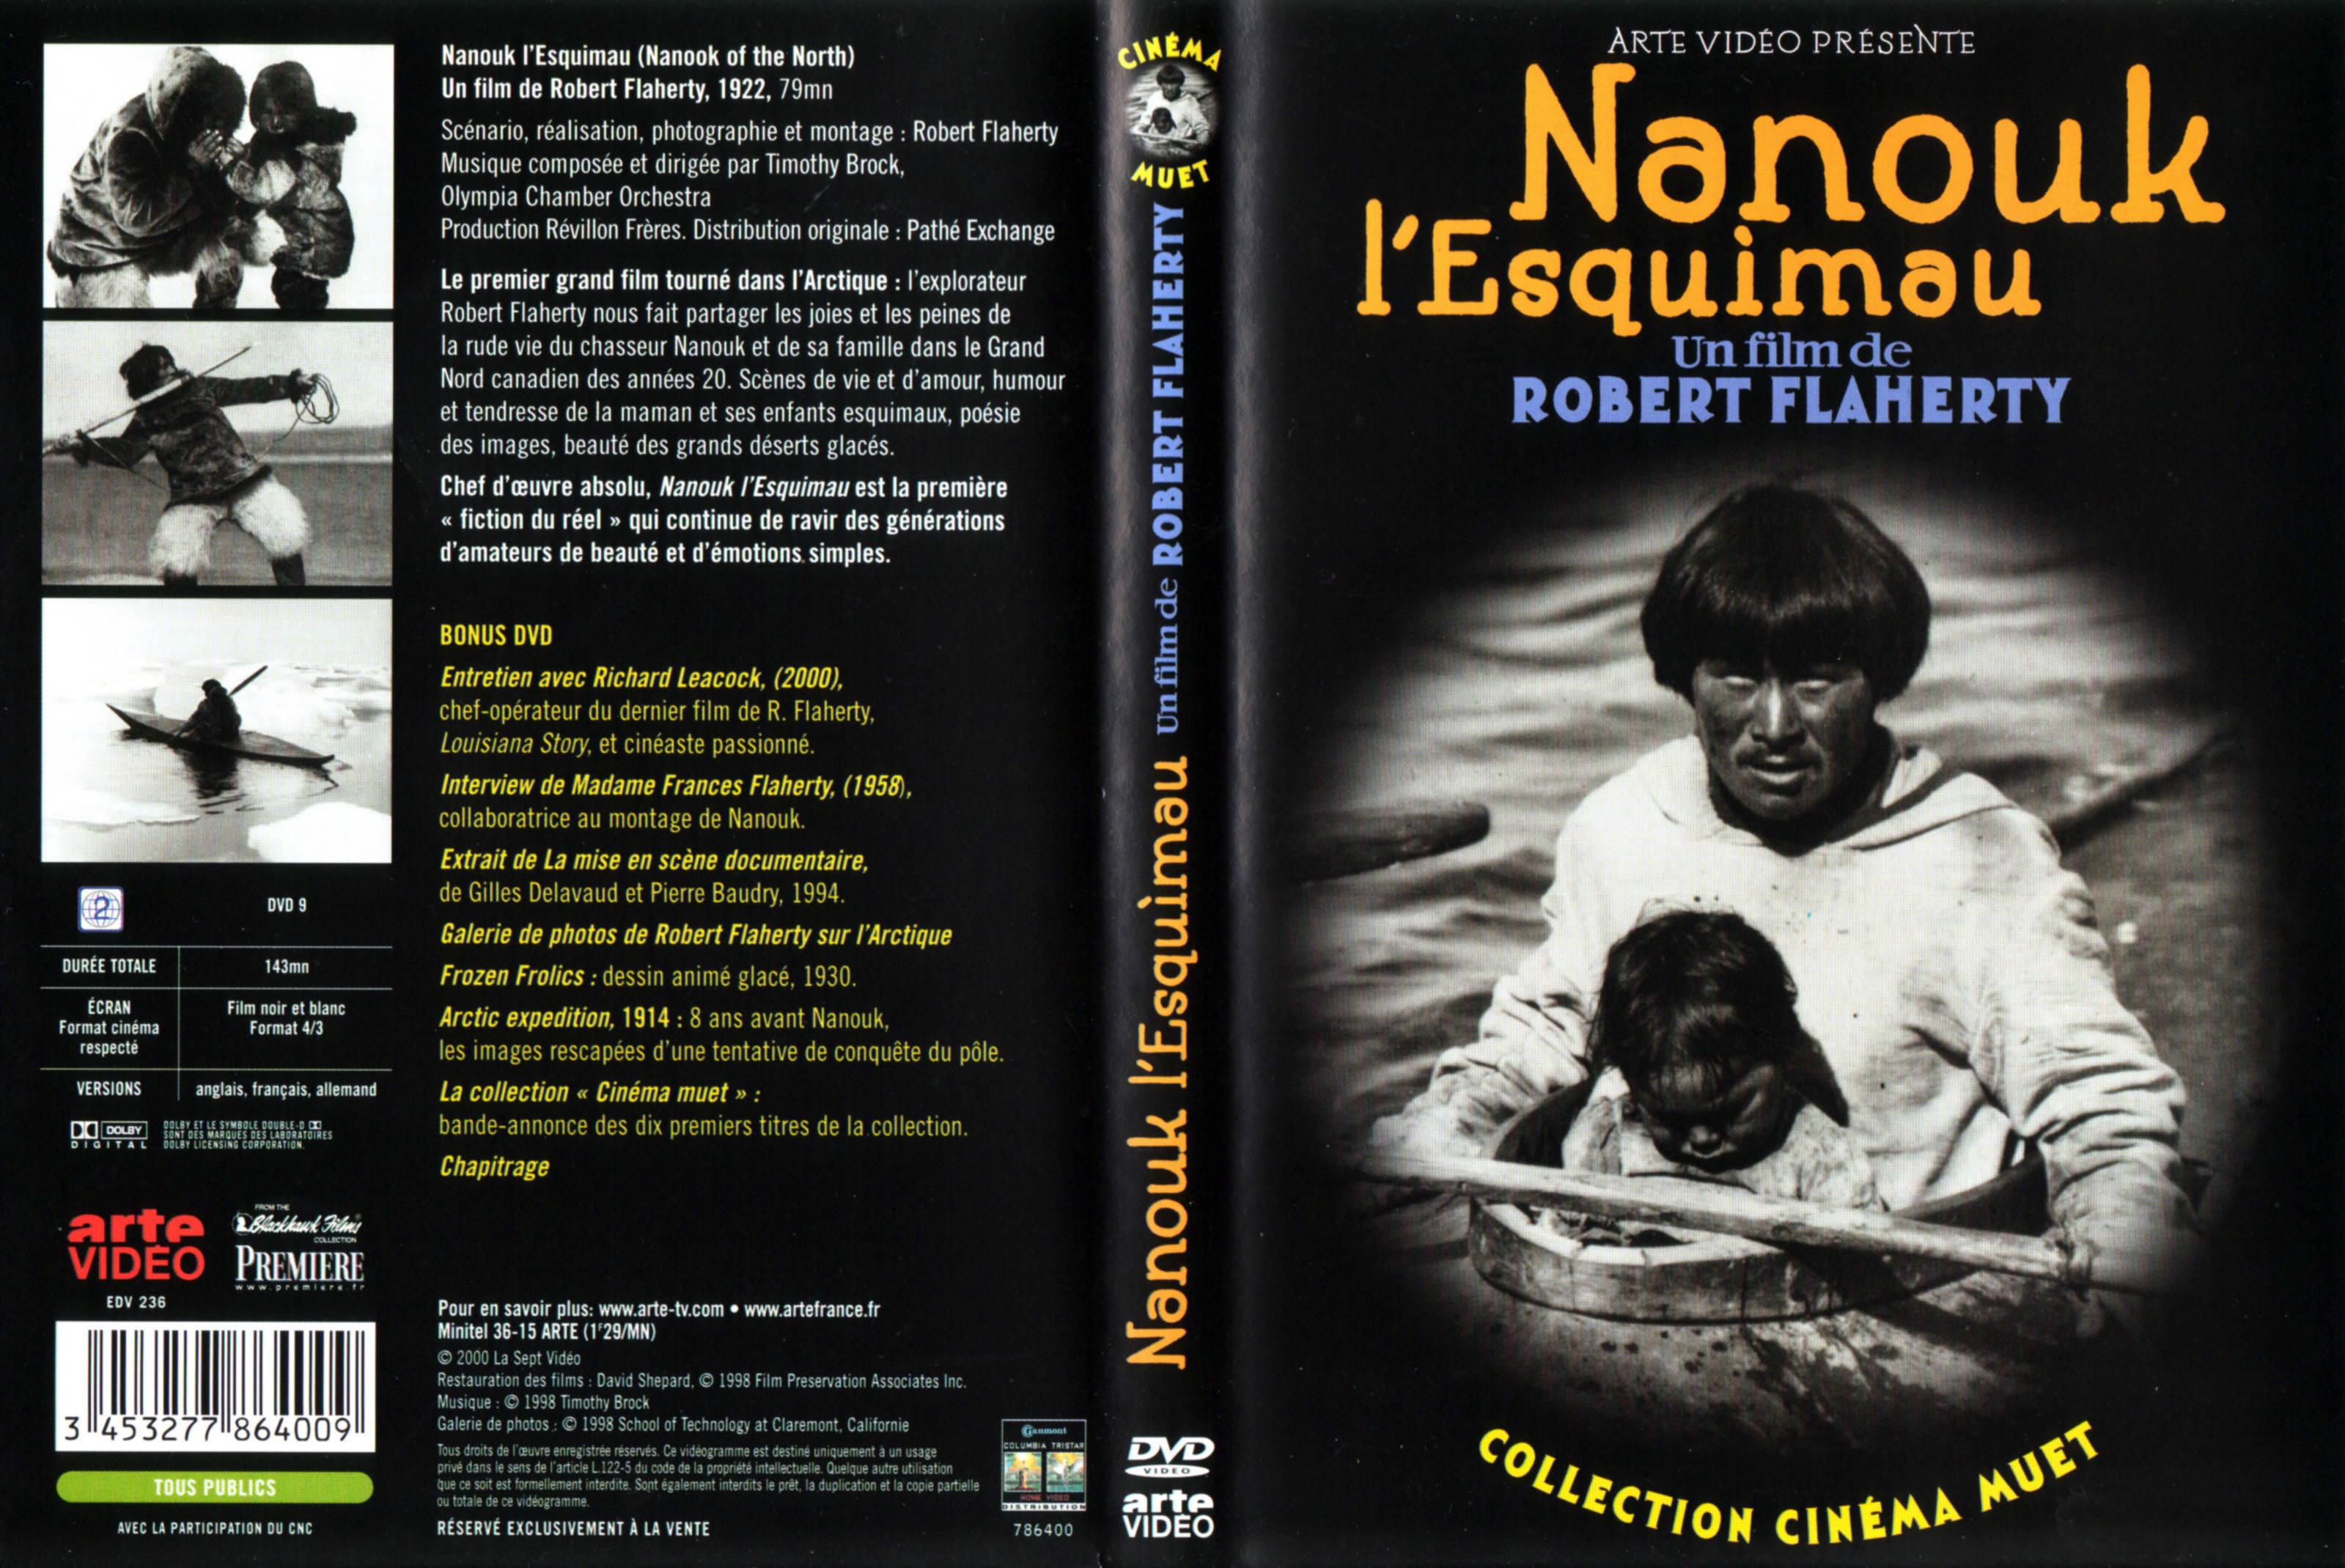 Jaquette DVD Nanouk l